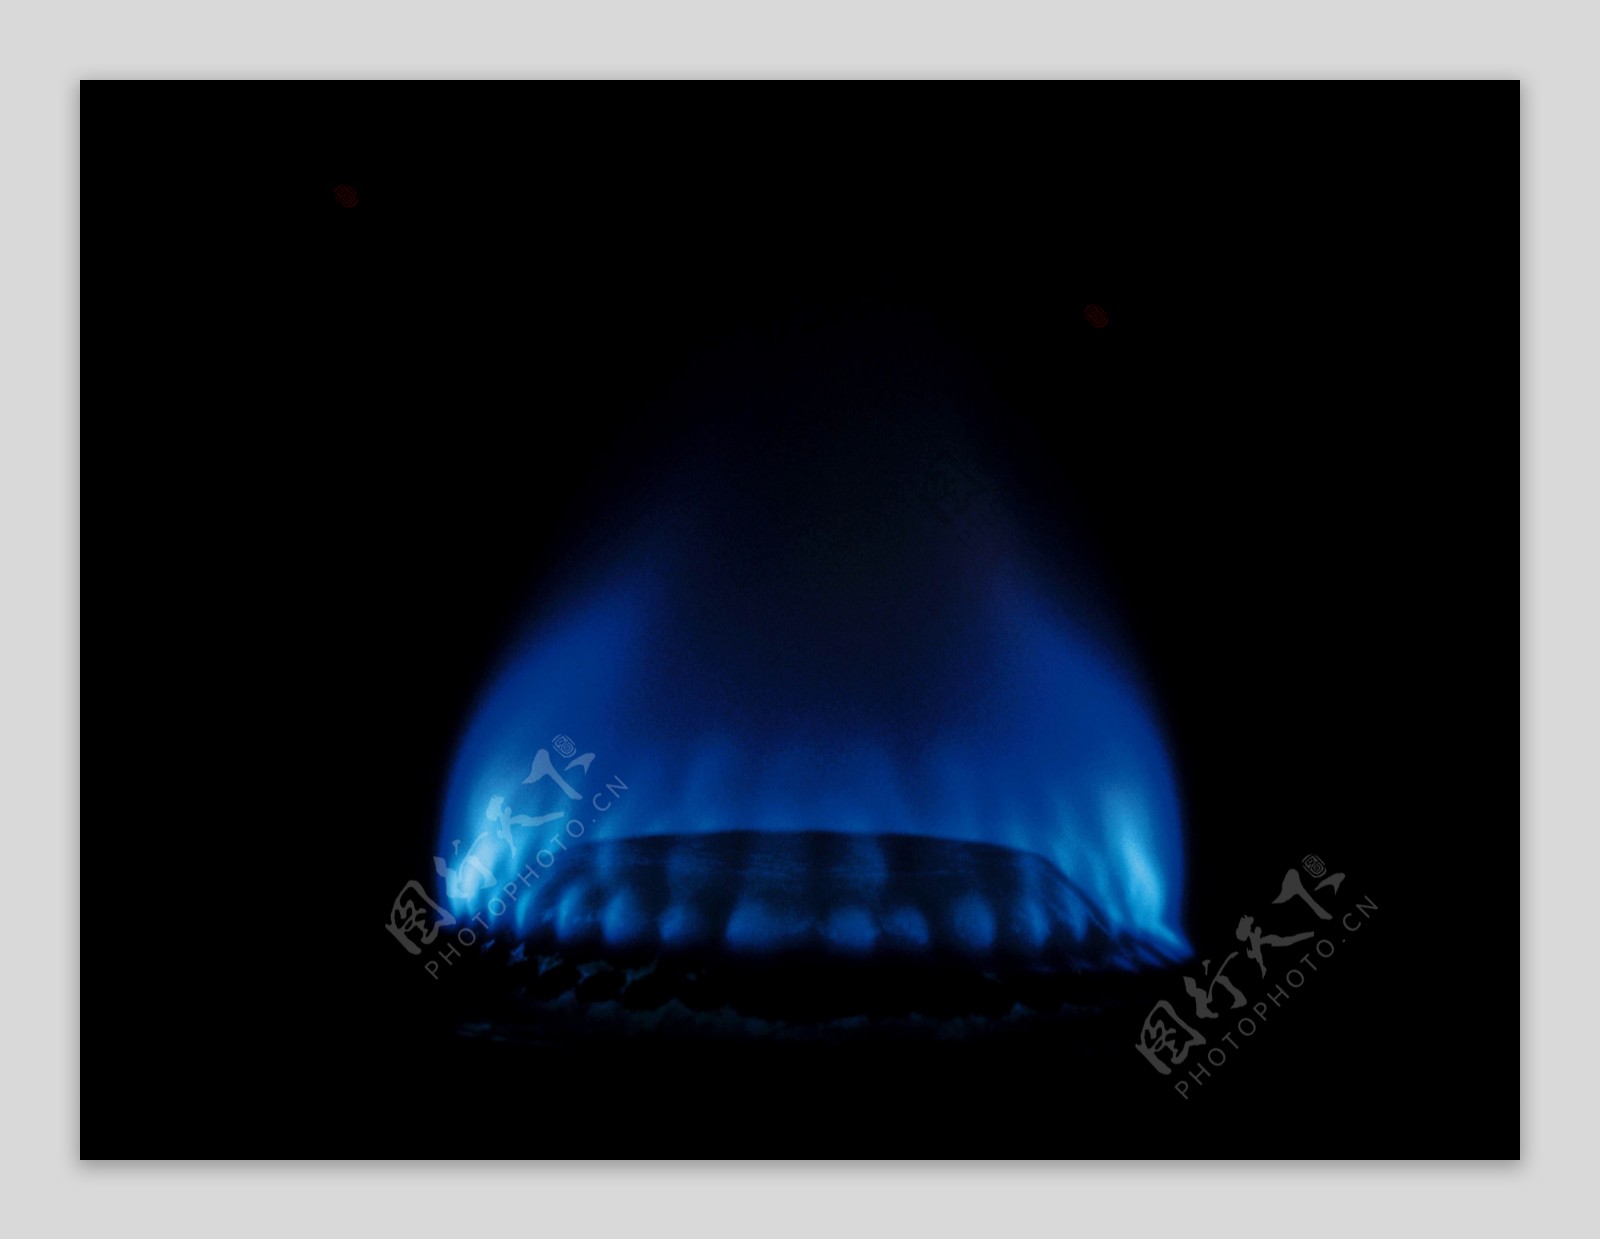 煤气灶蓝色火焰